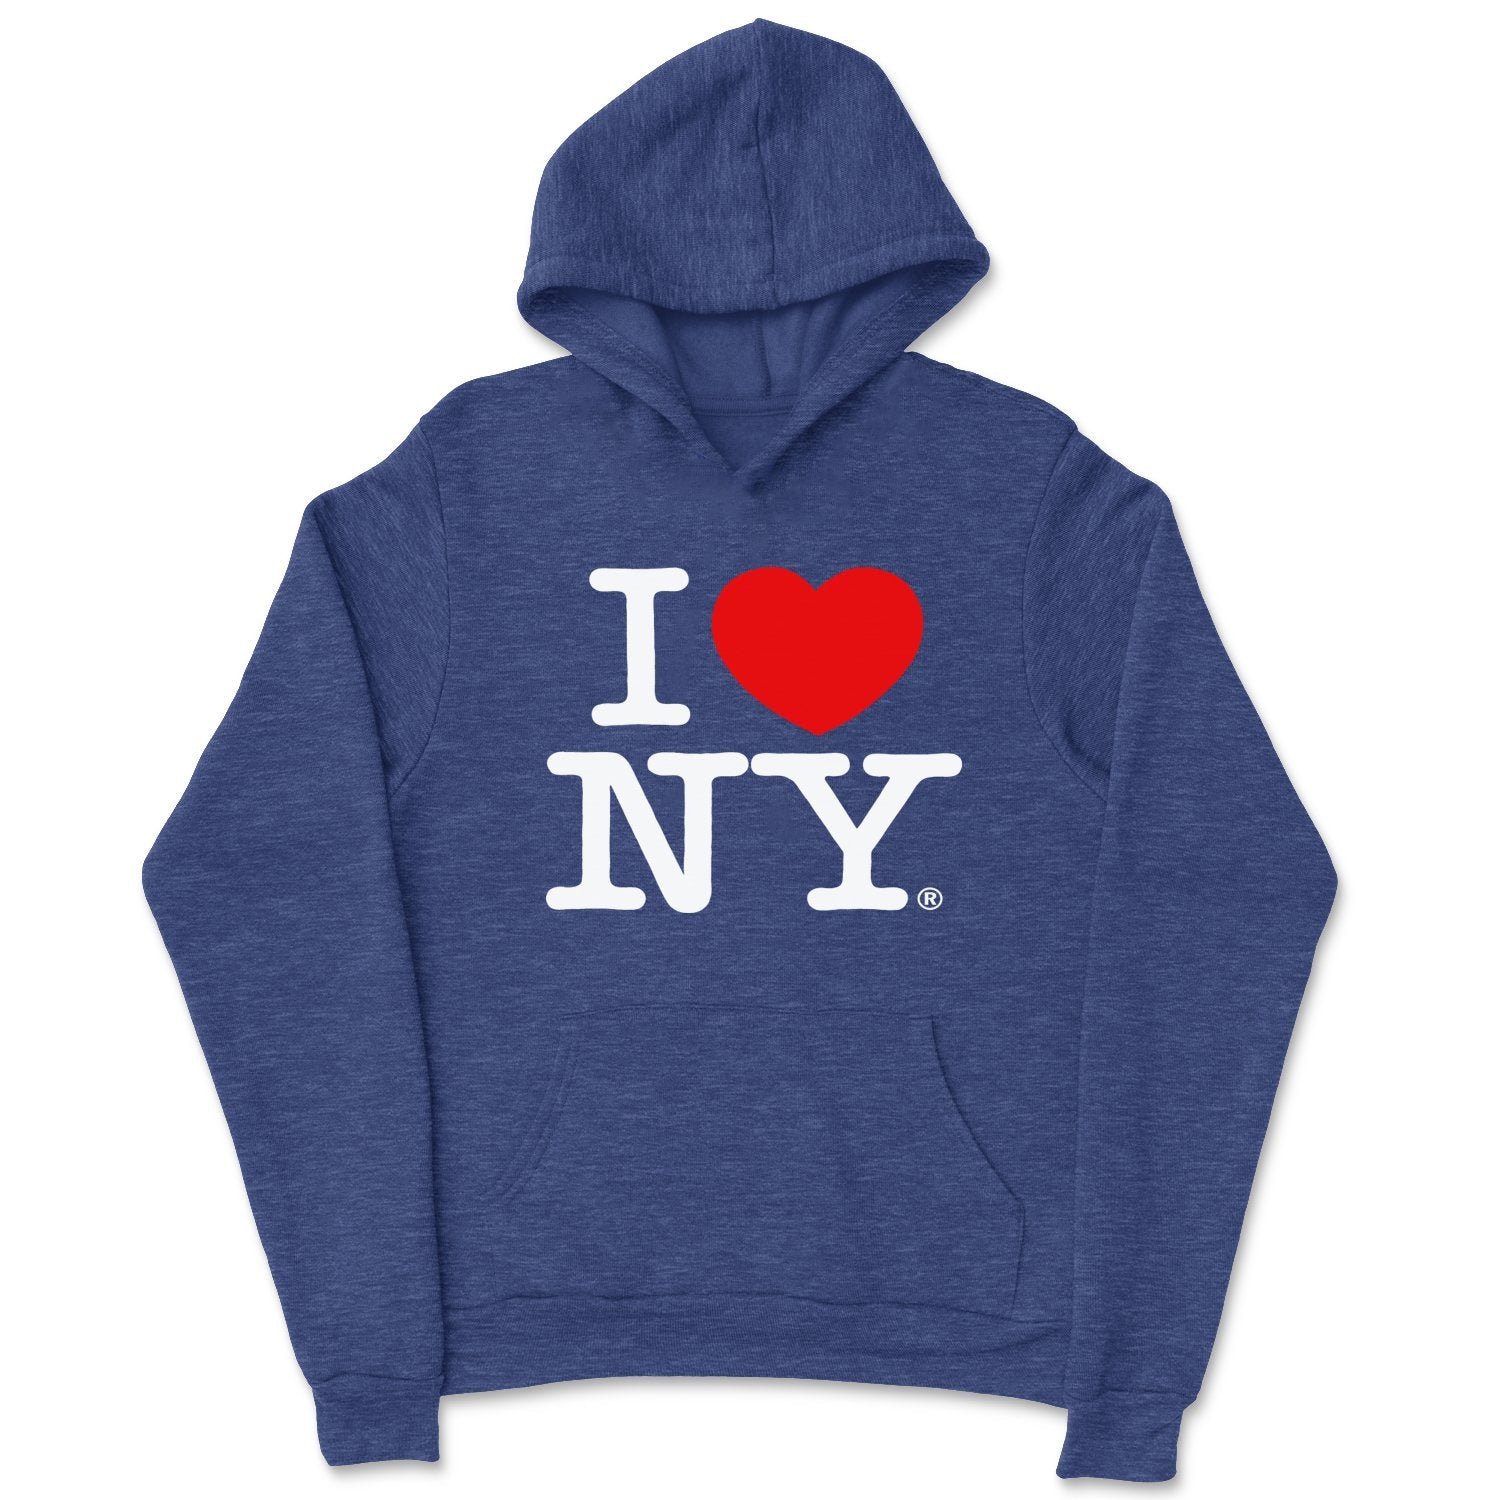 Ich liebe NY Kinder Hoodie Sweatshirt Heather Denim